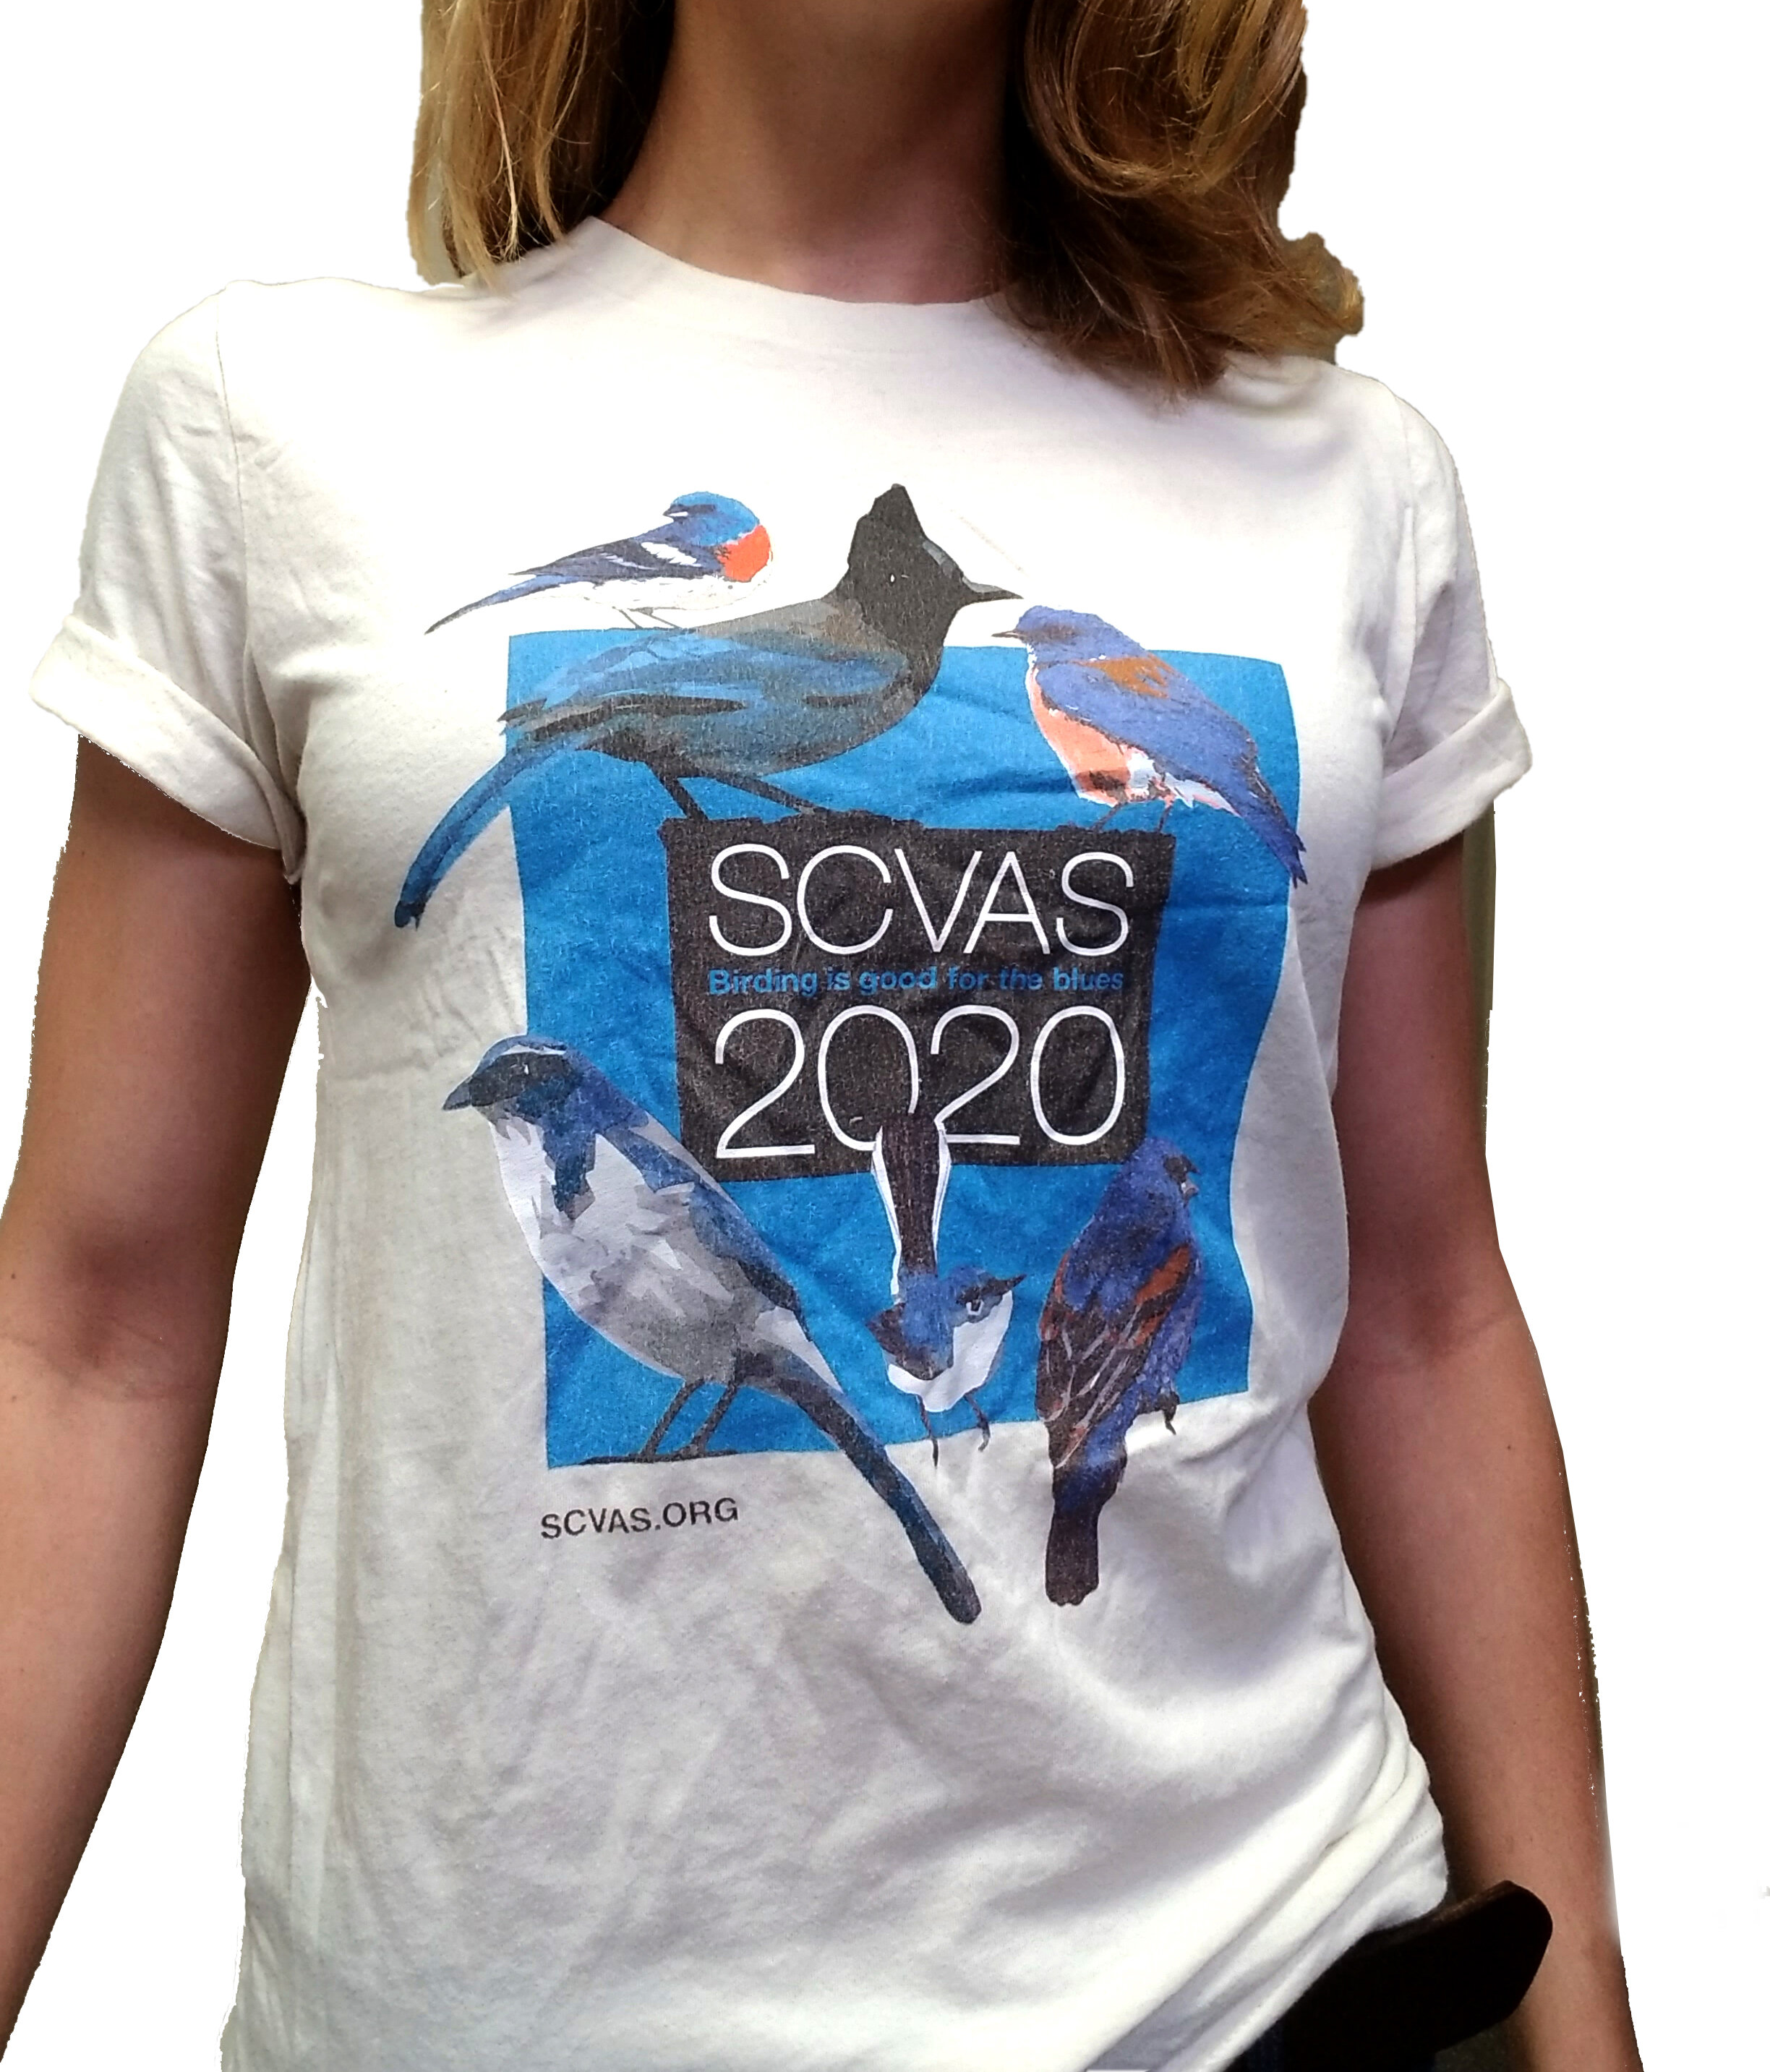 2020 T-Shirt - $25.00